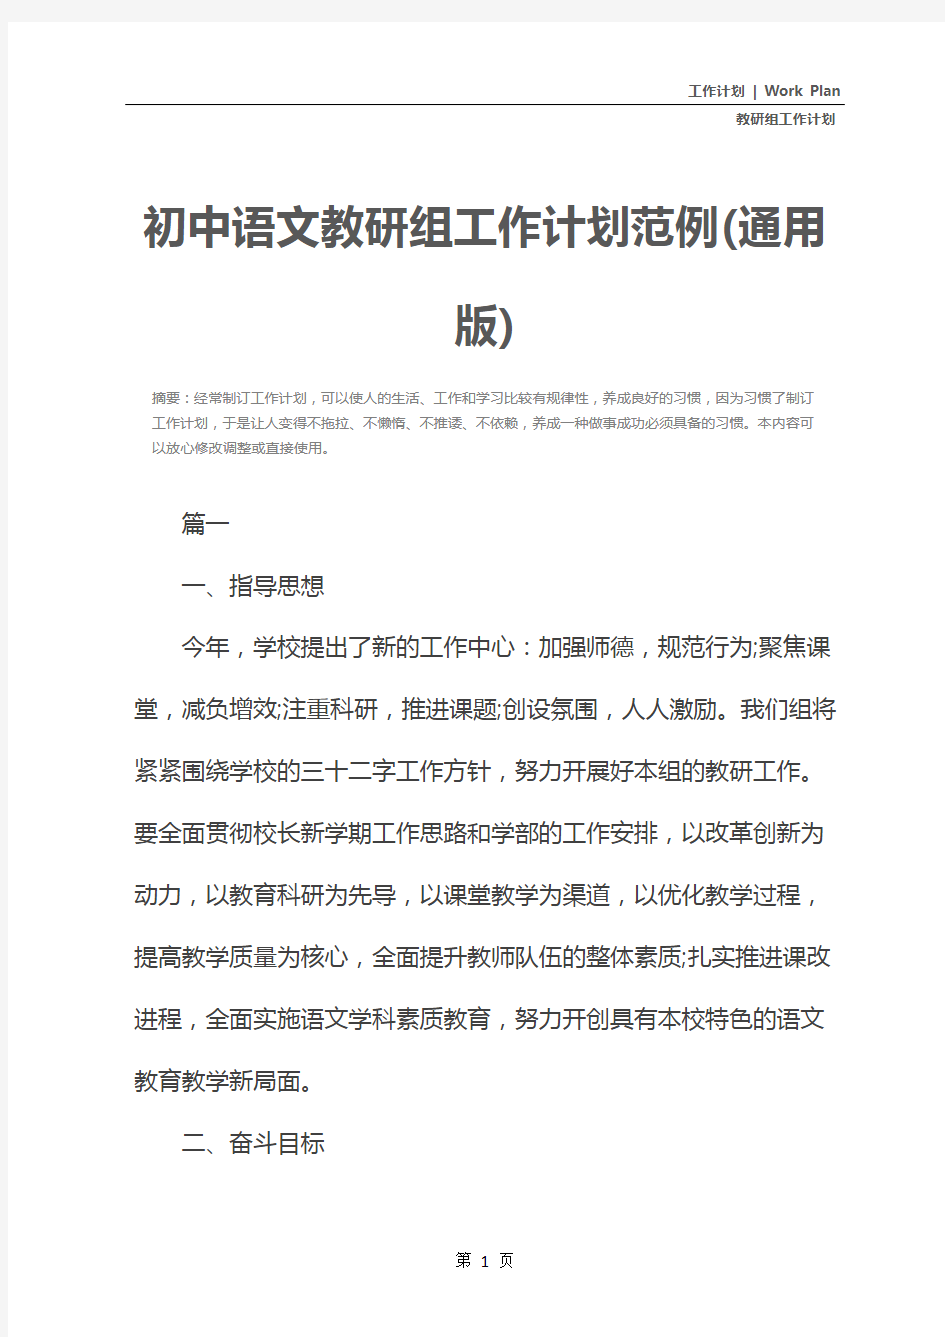 初中语文教研组工作计划范例(通用版)